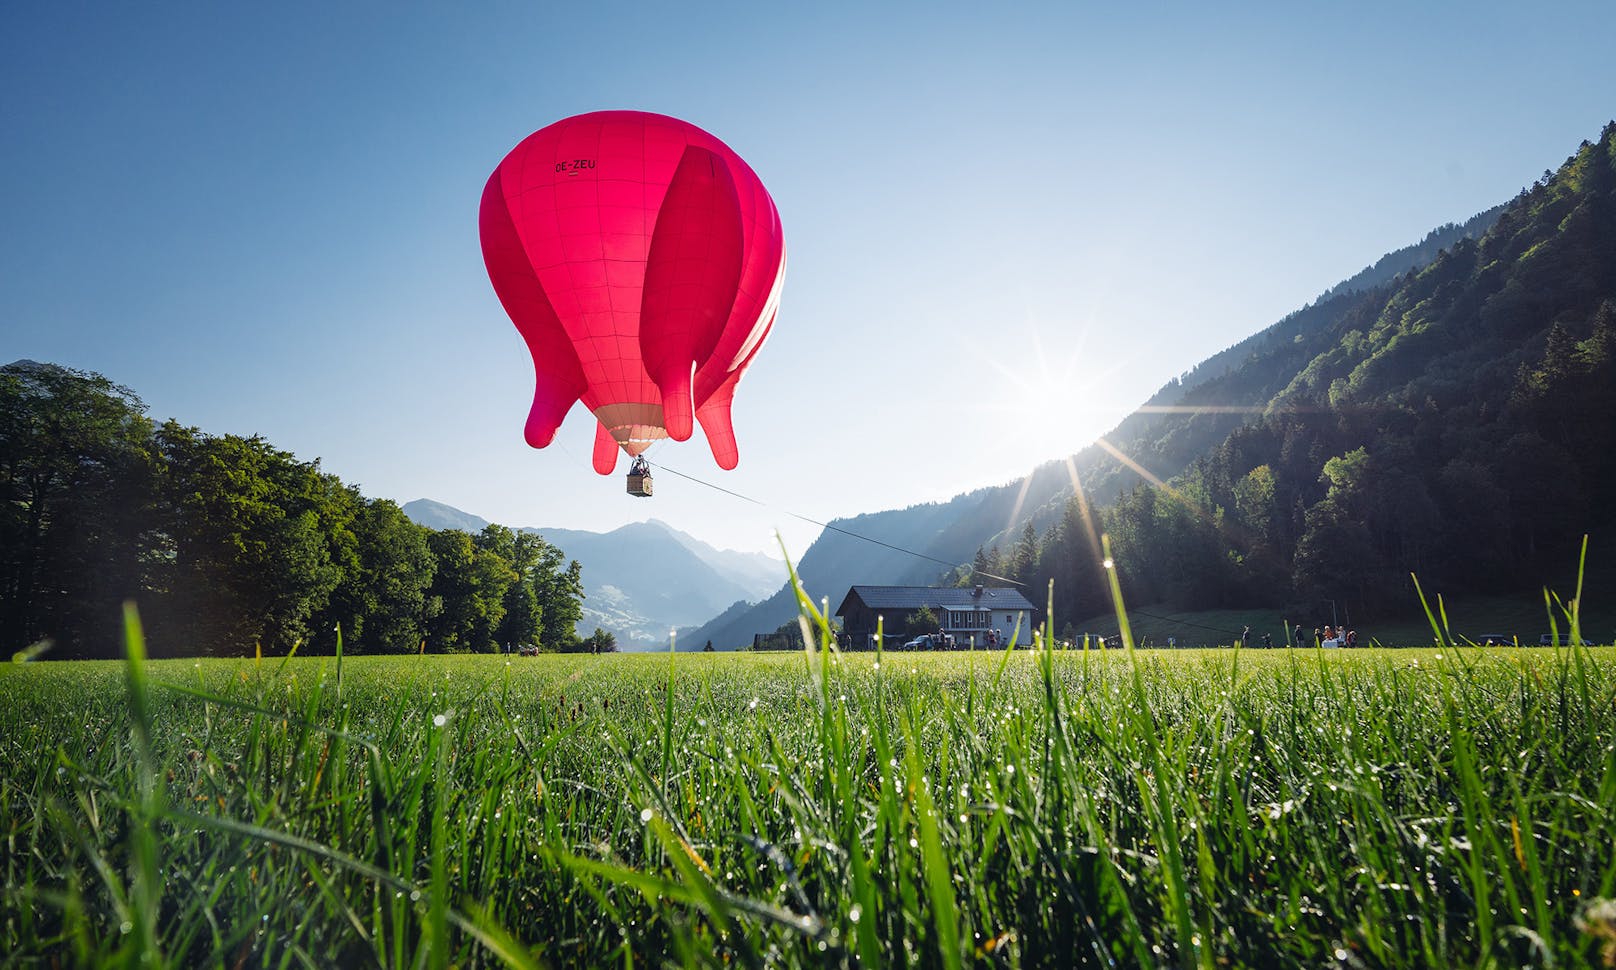 Der Heißluftballon in Form eines Kuheuters wird - bei gutem Wetter - am kommenden Nationalfeiertag über Wien schweben. Die "soziale Skulptur" der Wiener  Künstlerin Barbara Anna Husar soll für den Wertewandel stehen.